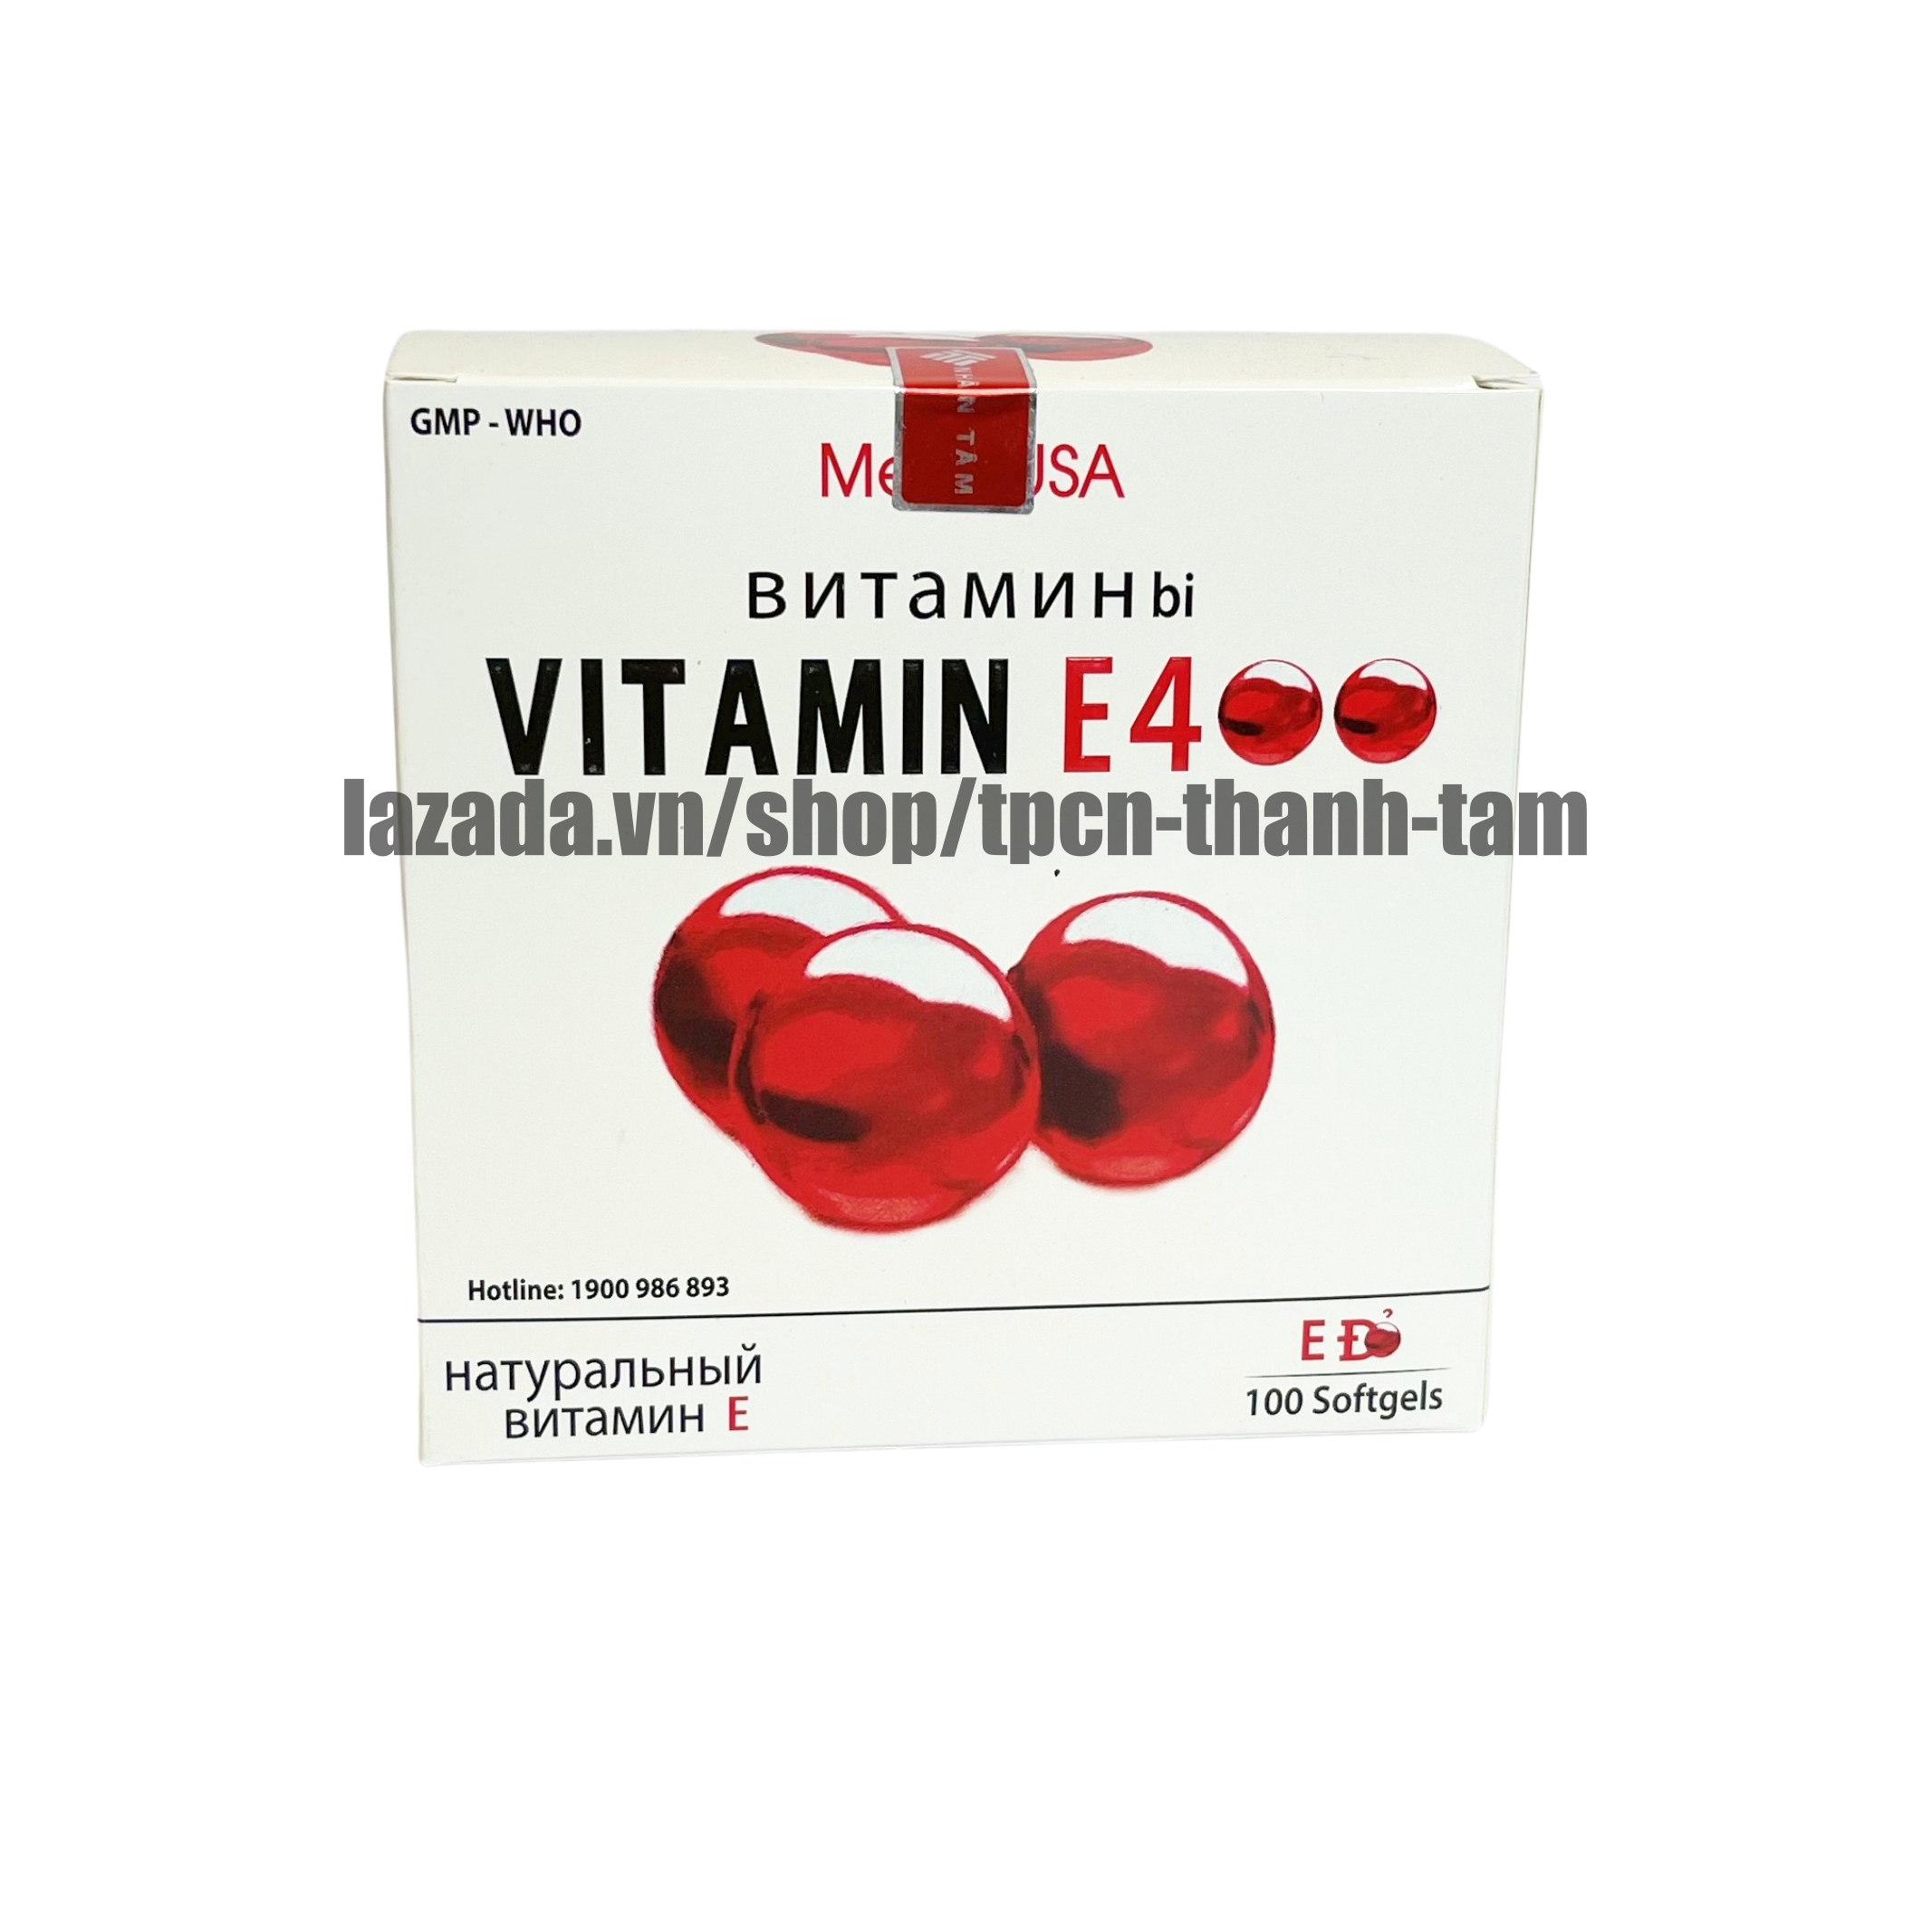 Viên uống VITAMINE ĐỎ bổ sung vitamin E giúp làm đẹp da, trắng da